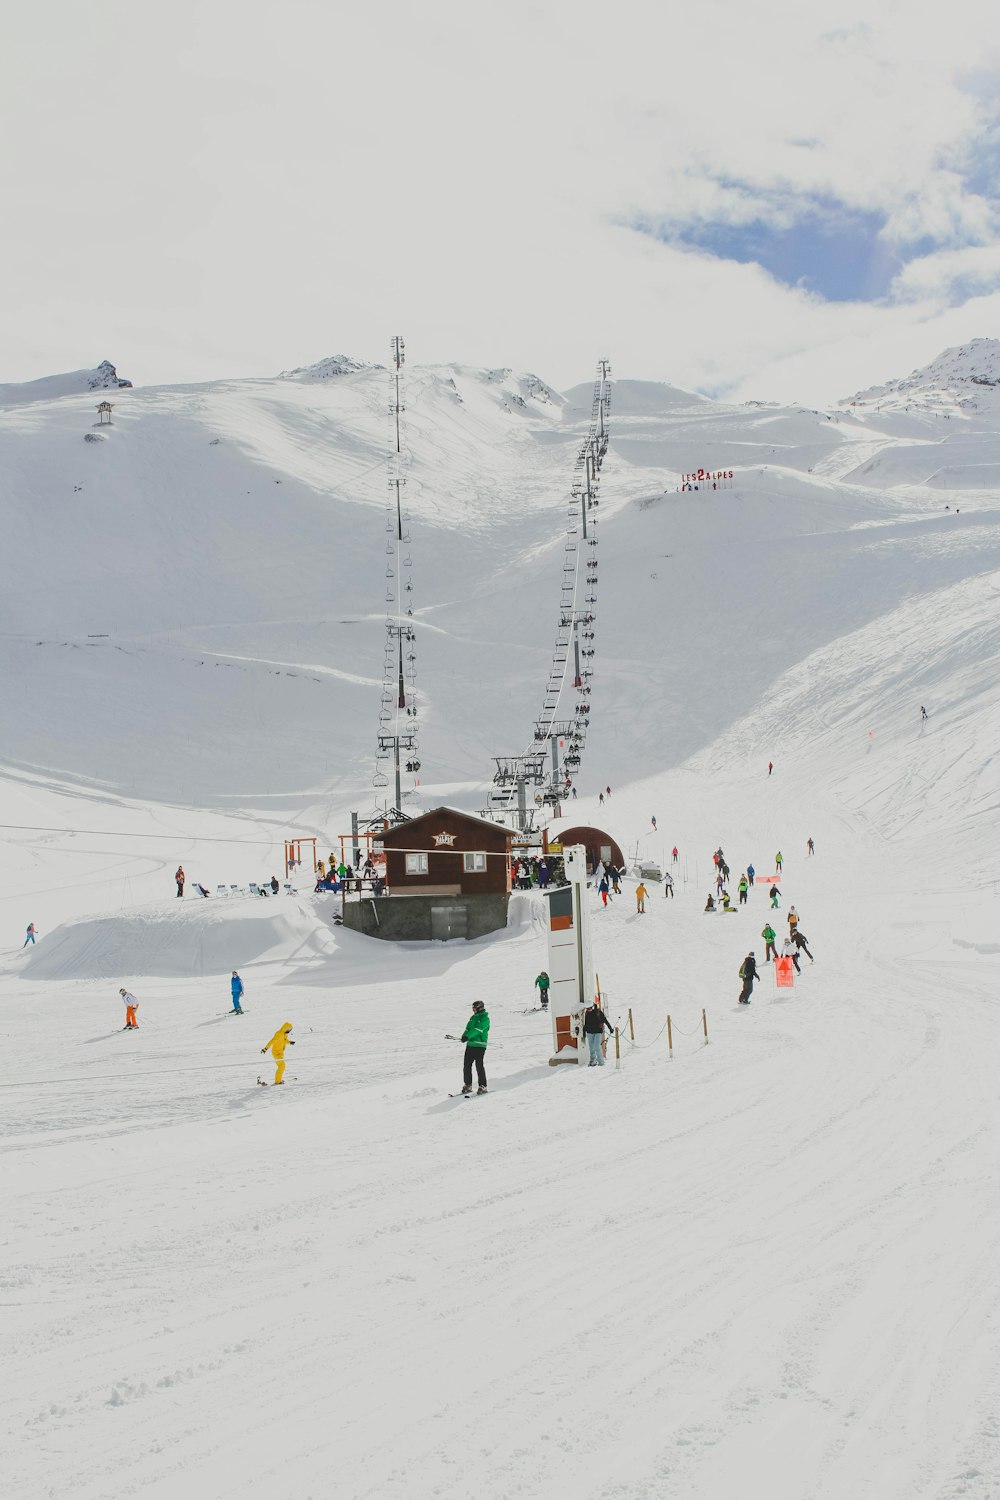 photo of people skiing on mountain